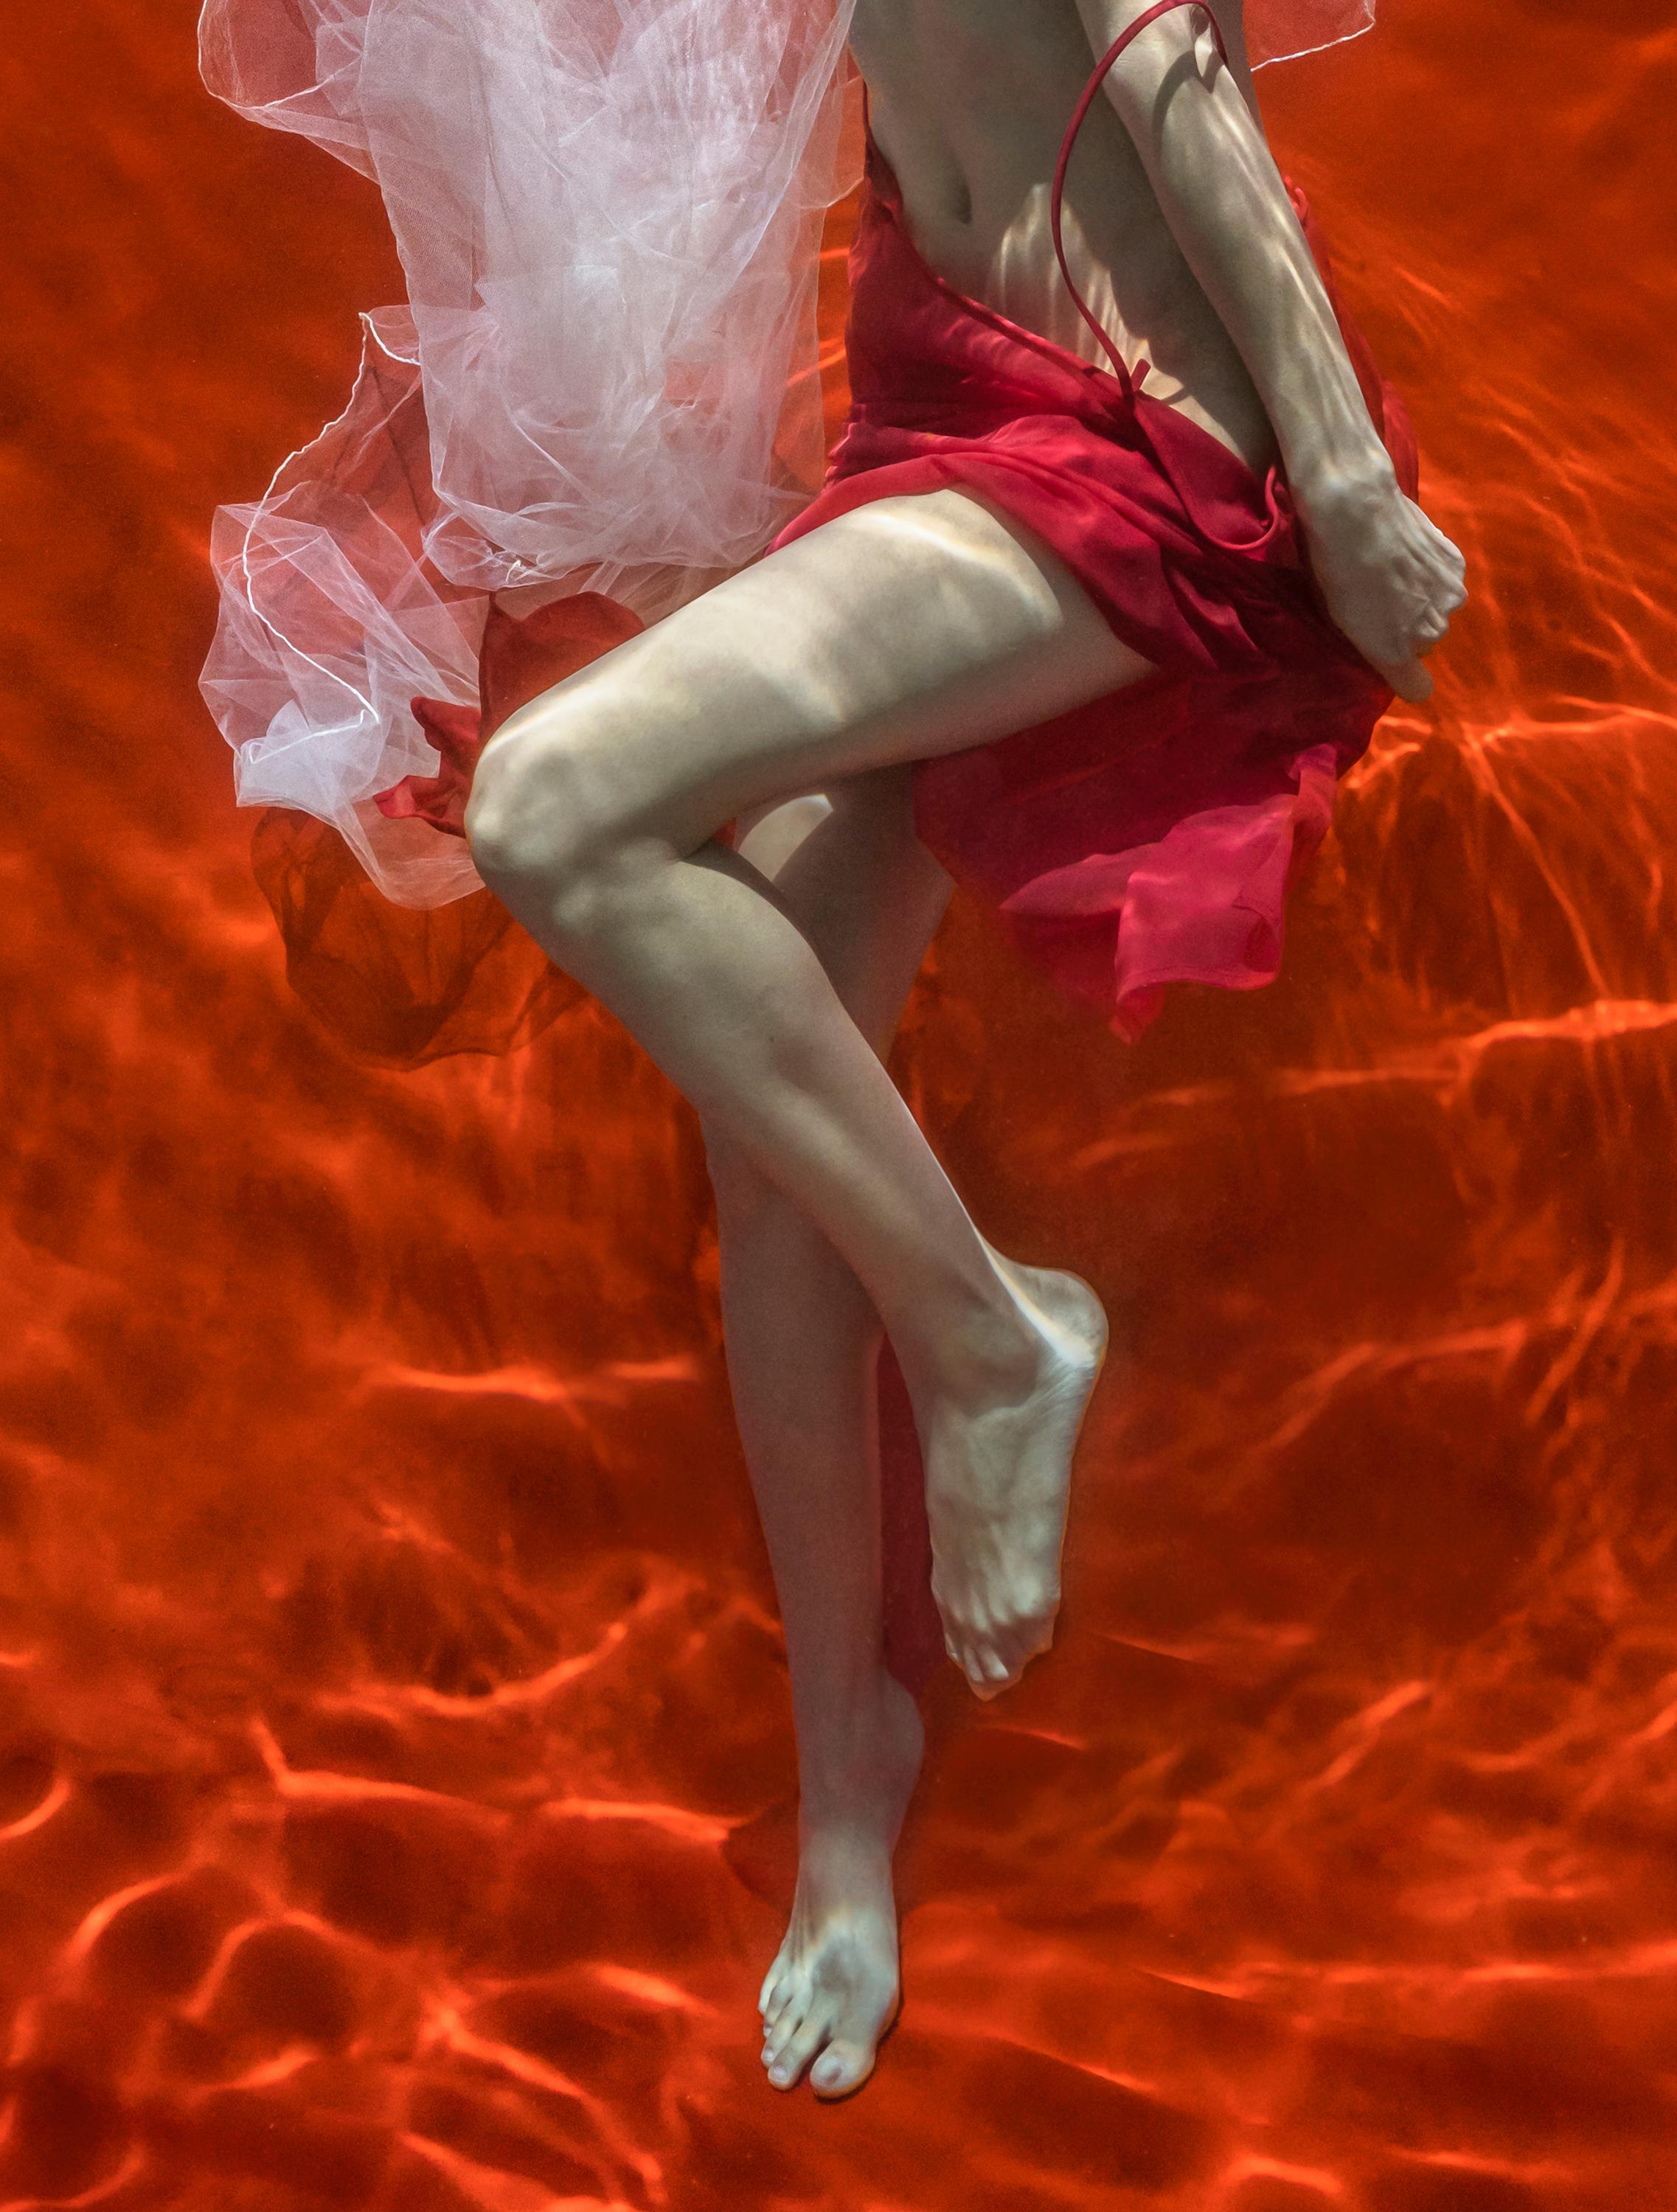 Photographie sous-marine d'une jeune femme aux seins nus avec un foulard en tulle blanc enlevant sa jupe rouge sur un fond rouge vif. 

Impression numérique originale sur papier d'archives signée par l'artiste.
Edition limitée à 24 exemplaires